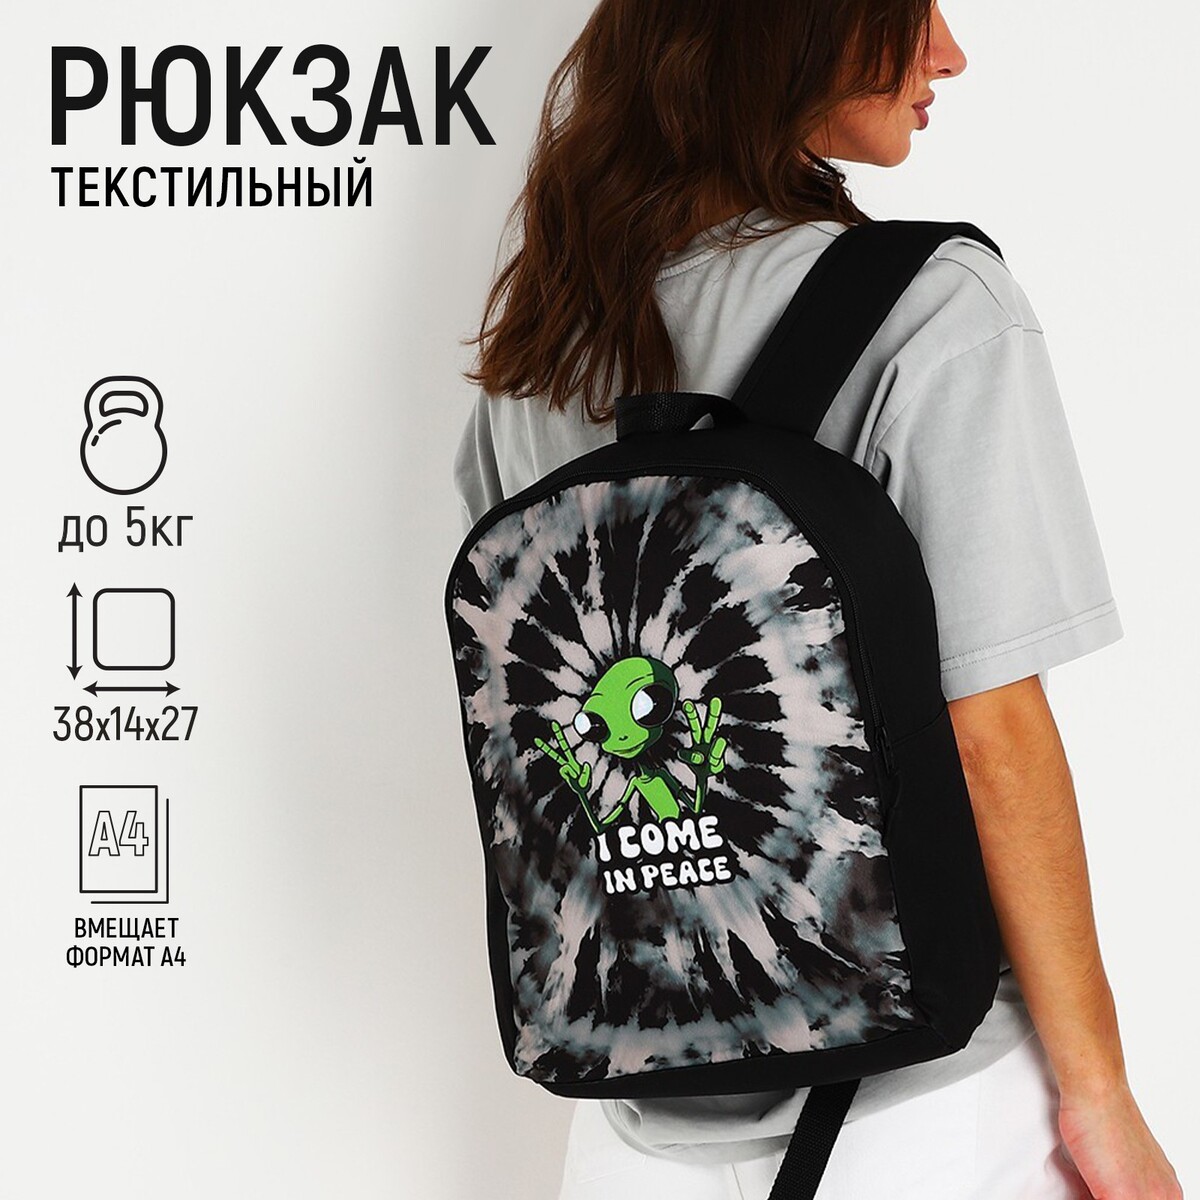 Рюкзак текстильный инопланетянин, 38х14х27 см, цвет черный инопланетянин